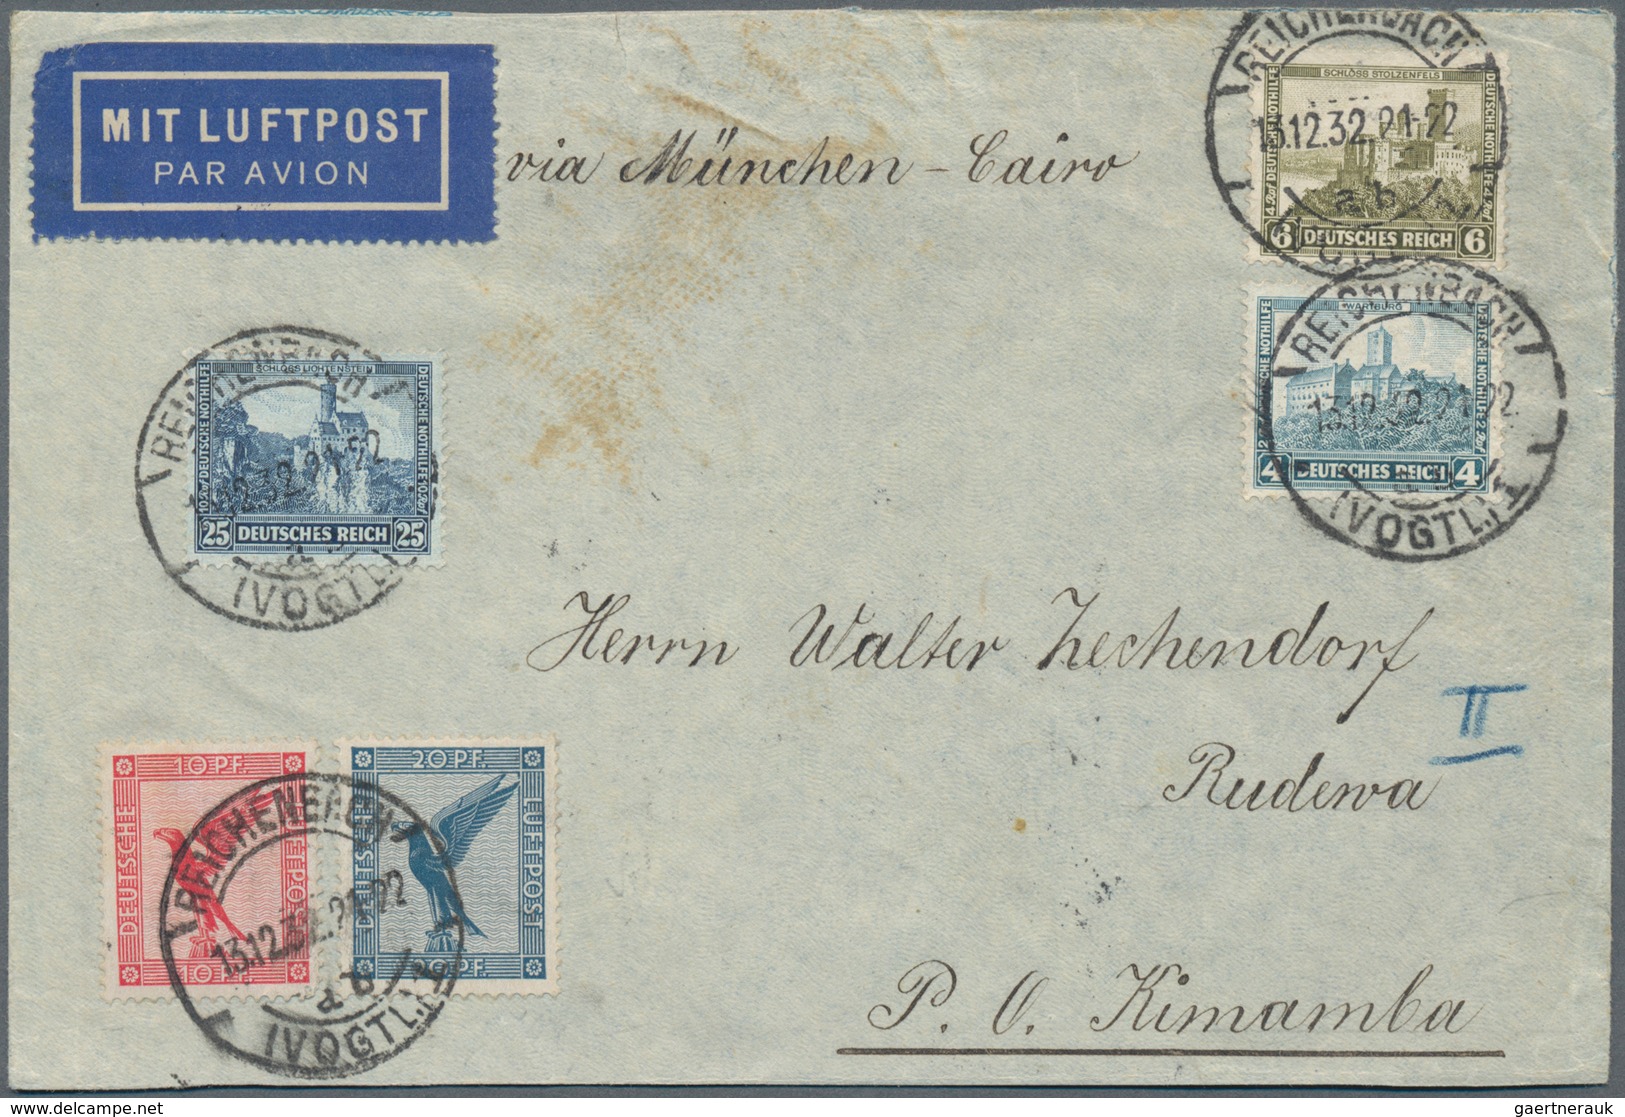 Flugpost Deutschland: 1909/1960 ca., sehr reichhaltige Sammlung der deutschen Luftpost mit über 300